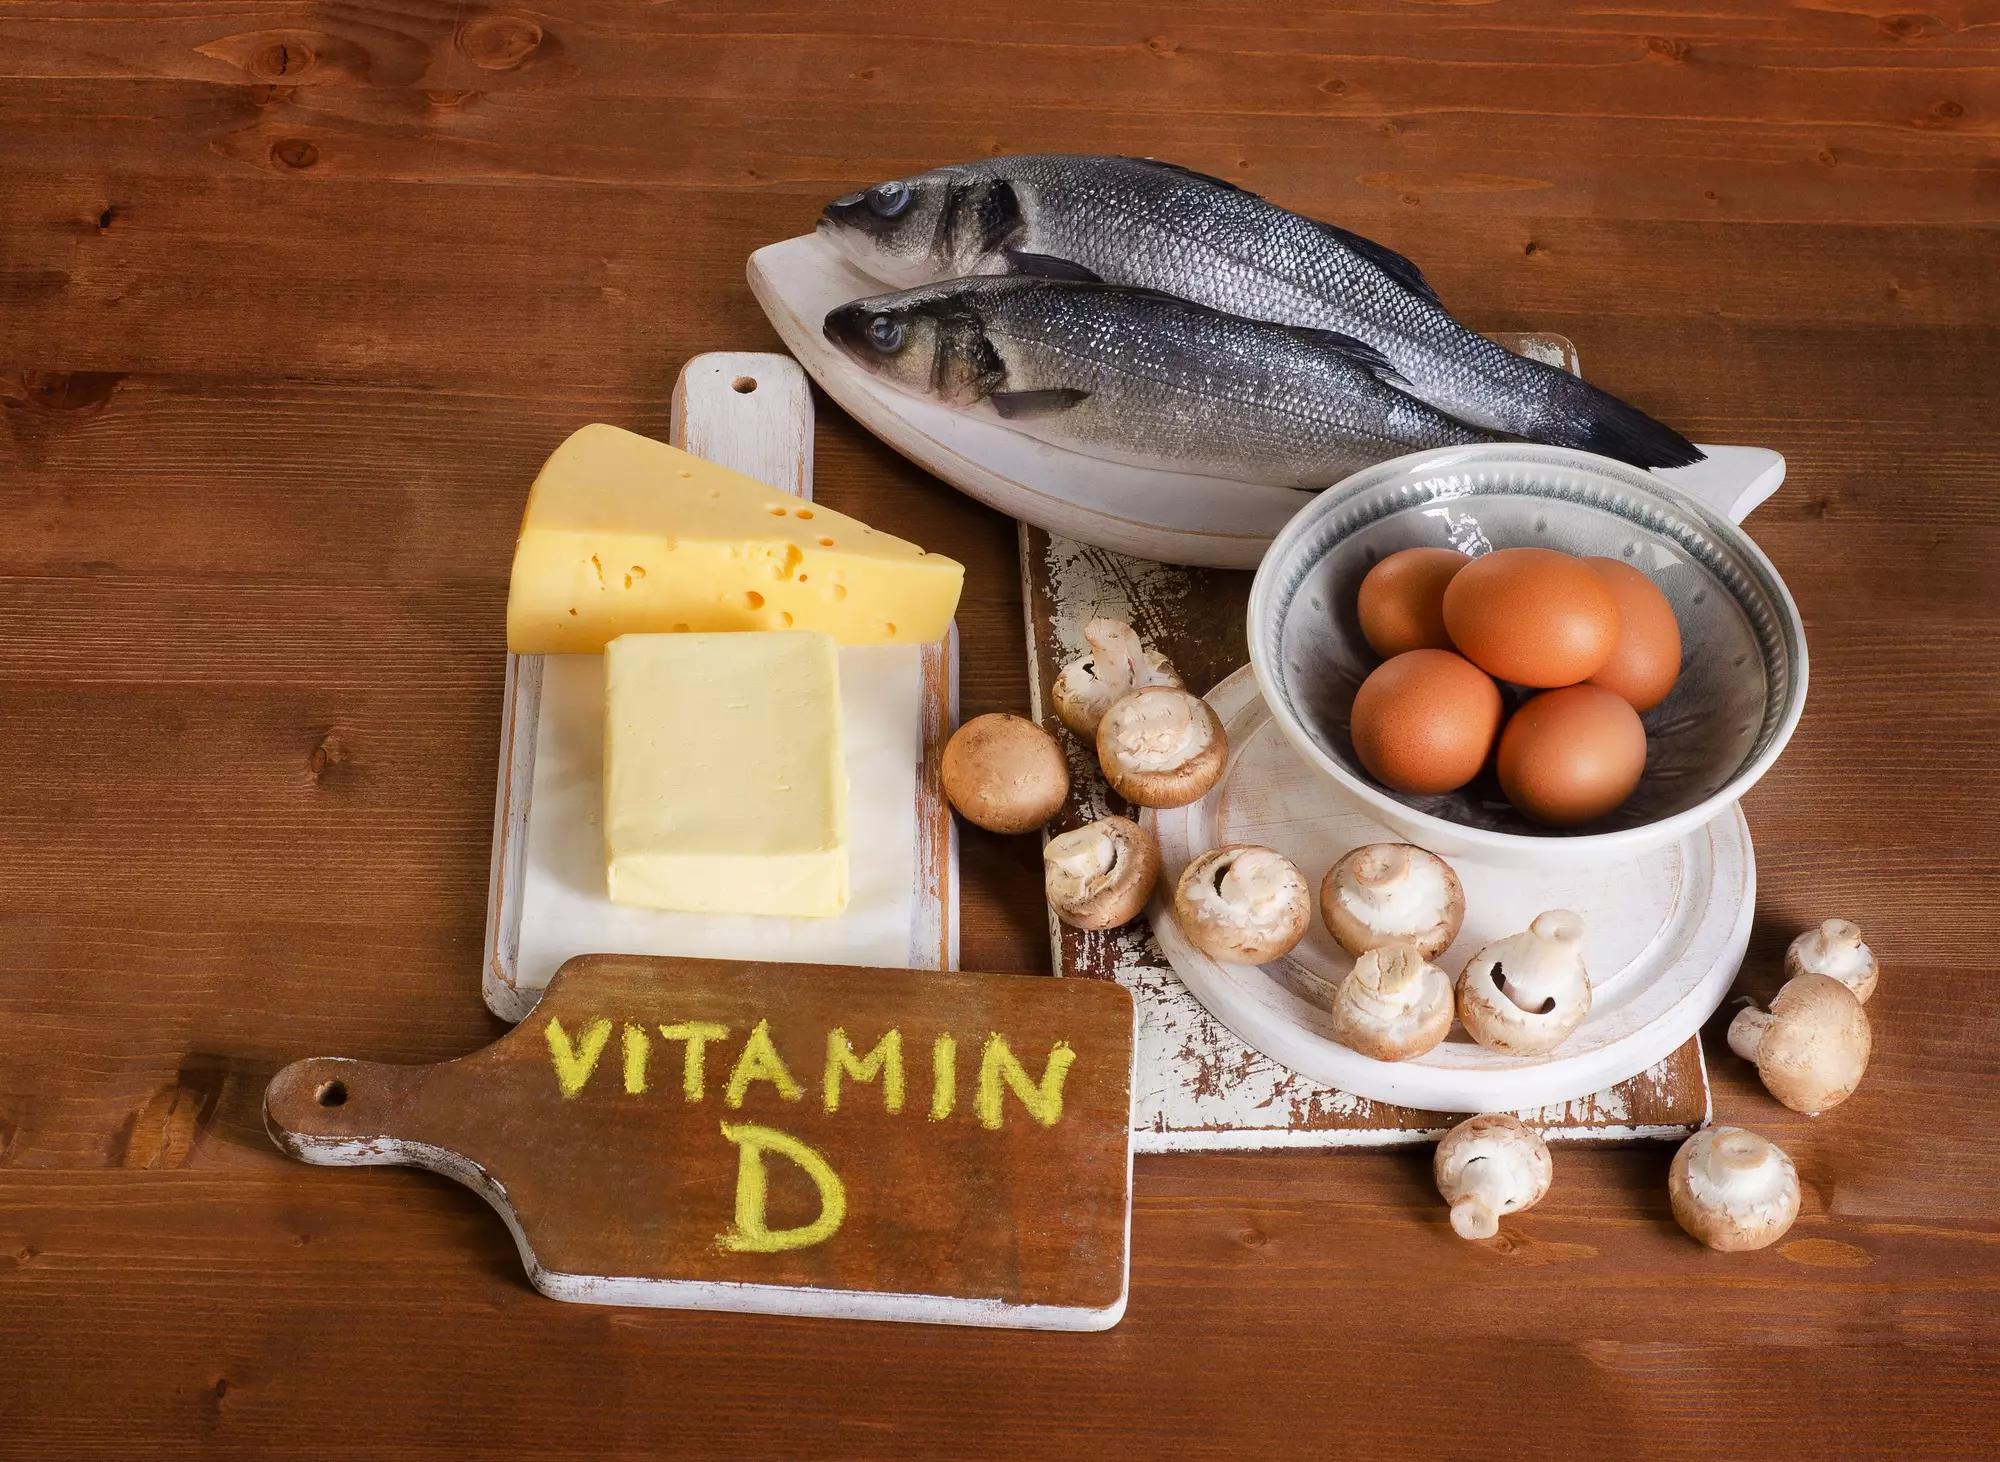 Включаете в рацион морскую рыбу, яйца, кисломолочные продукты, чтобы избежать дефицита витамина D 